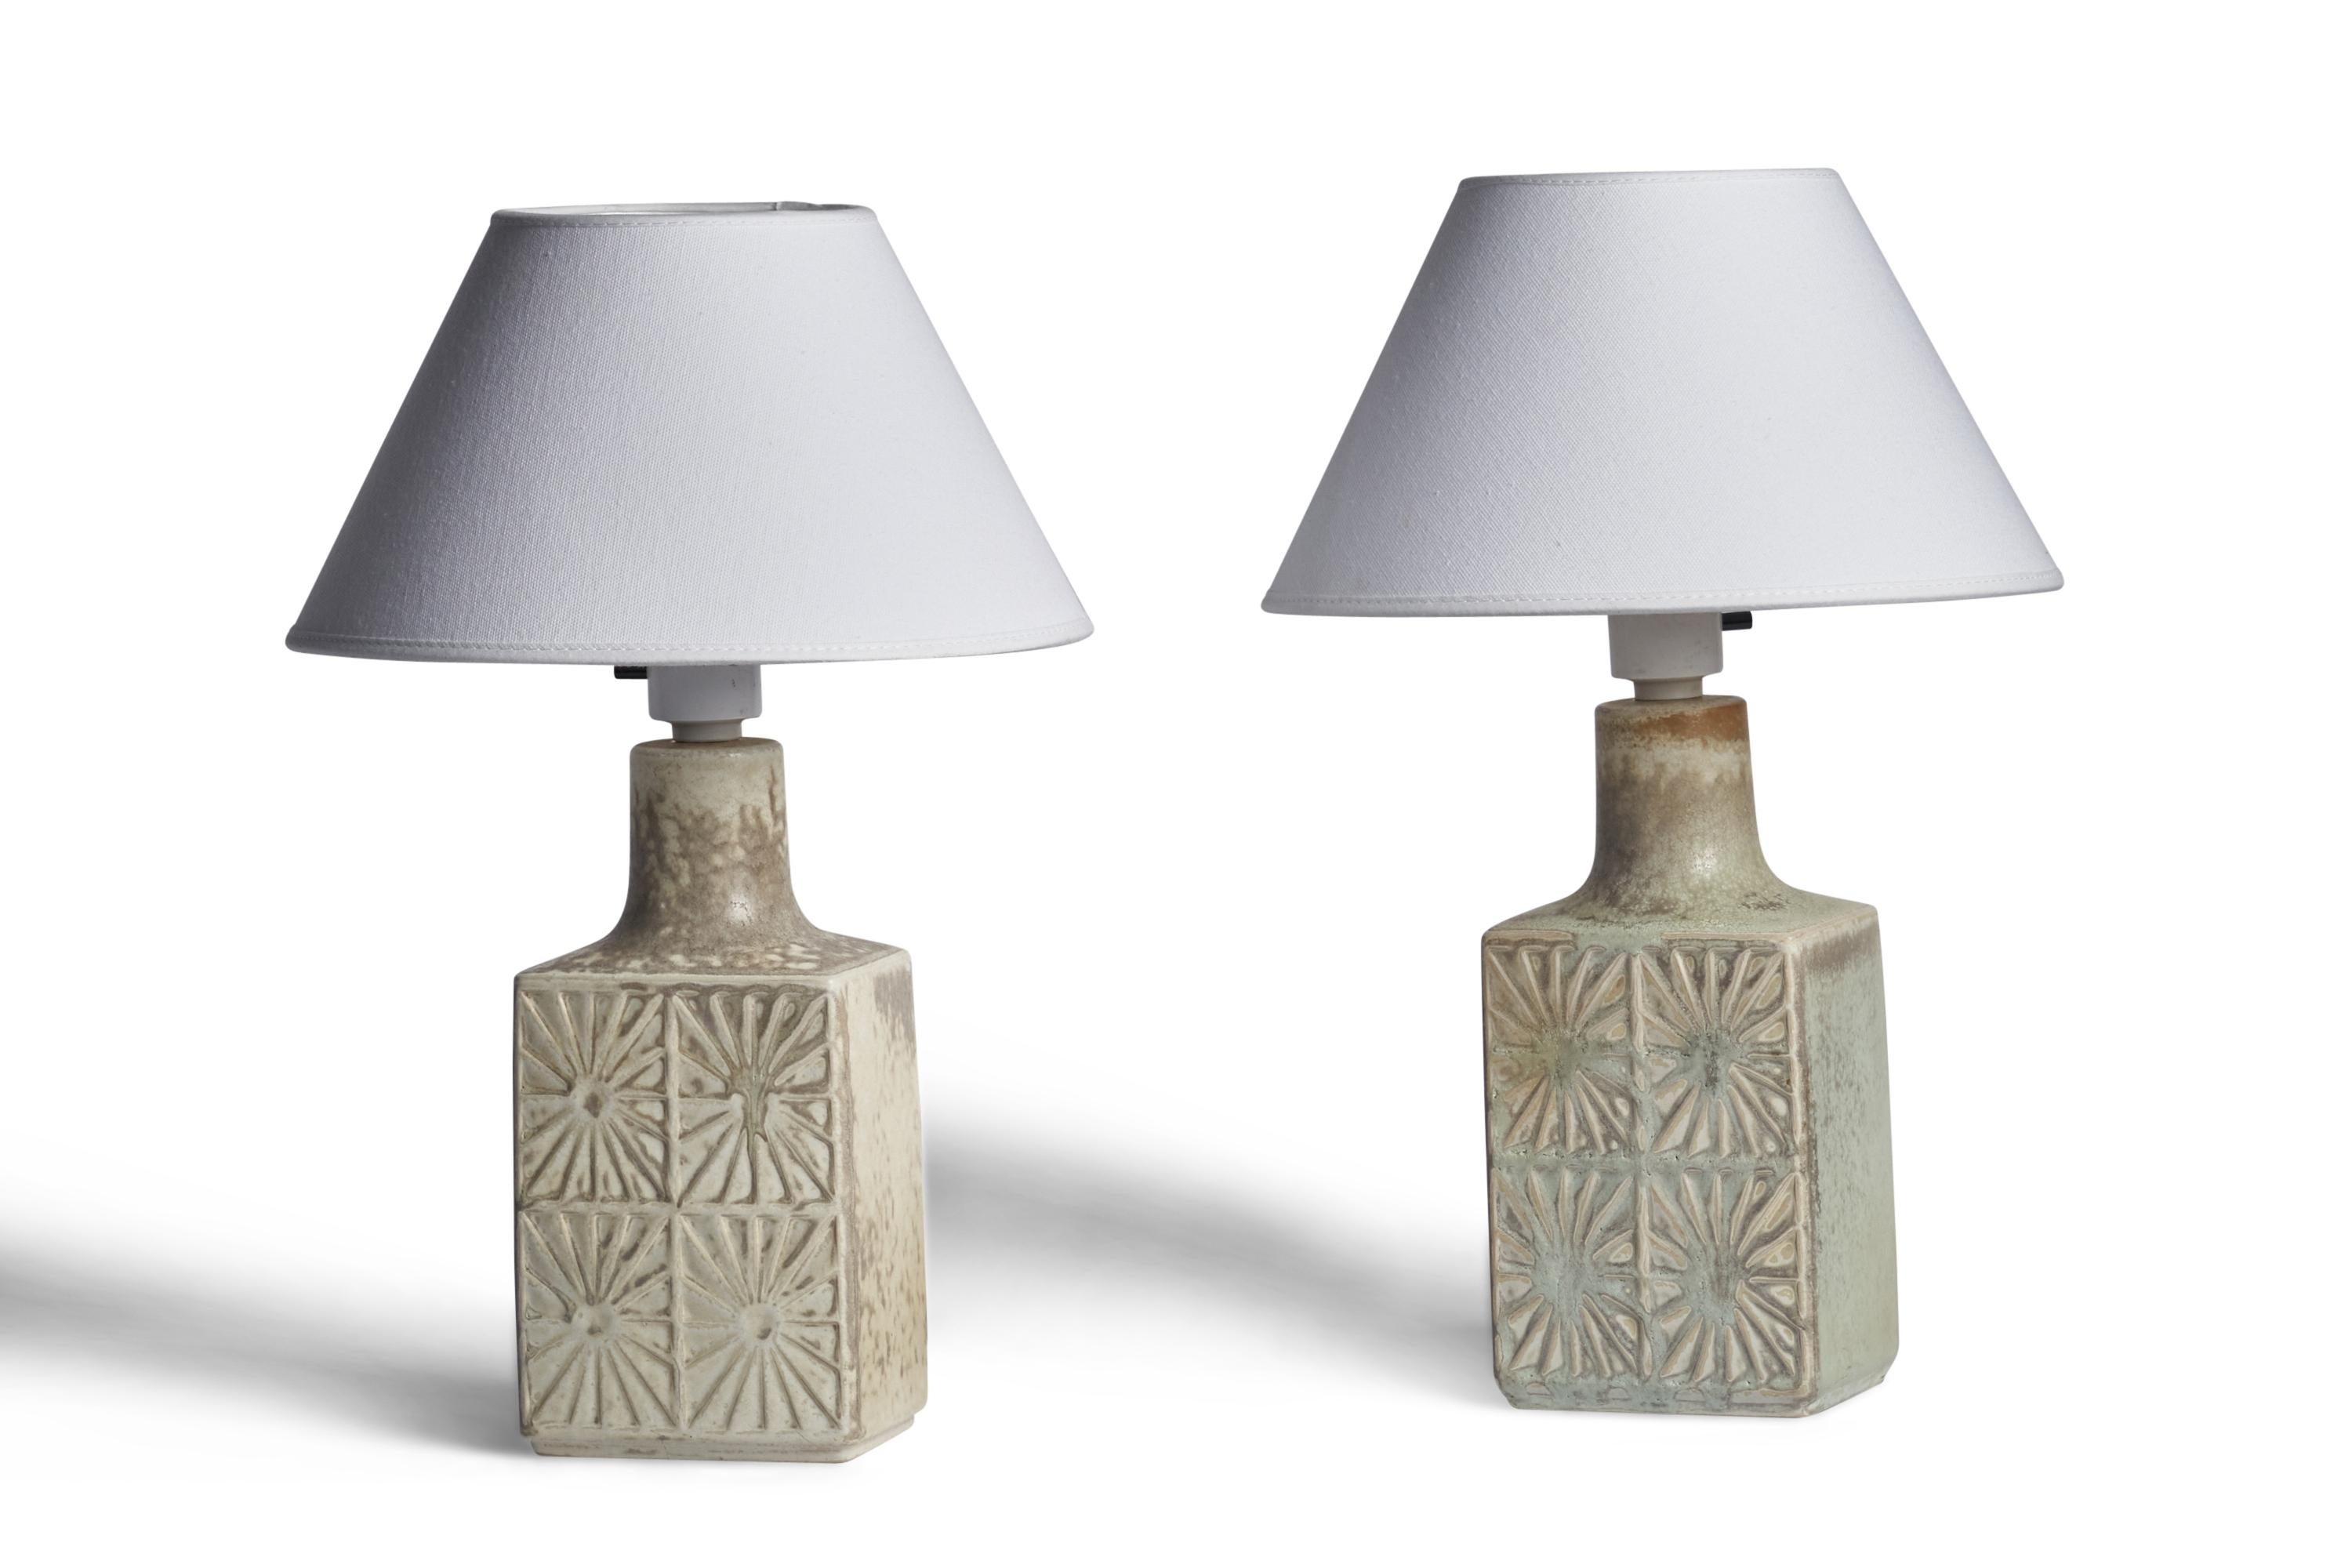 Ein Paar hellgraue glasierte Tischlampen, entworfen und hergestellt von Desiree, Dänemark, 1960er Jahre.

Abmessungen der Lampe (Zoll): 11,25